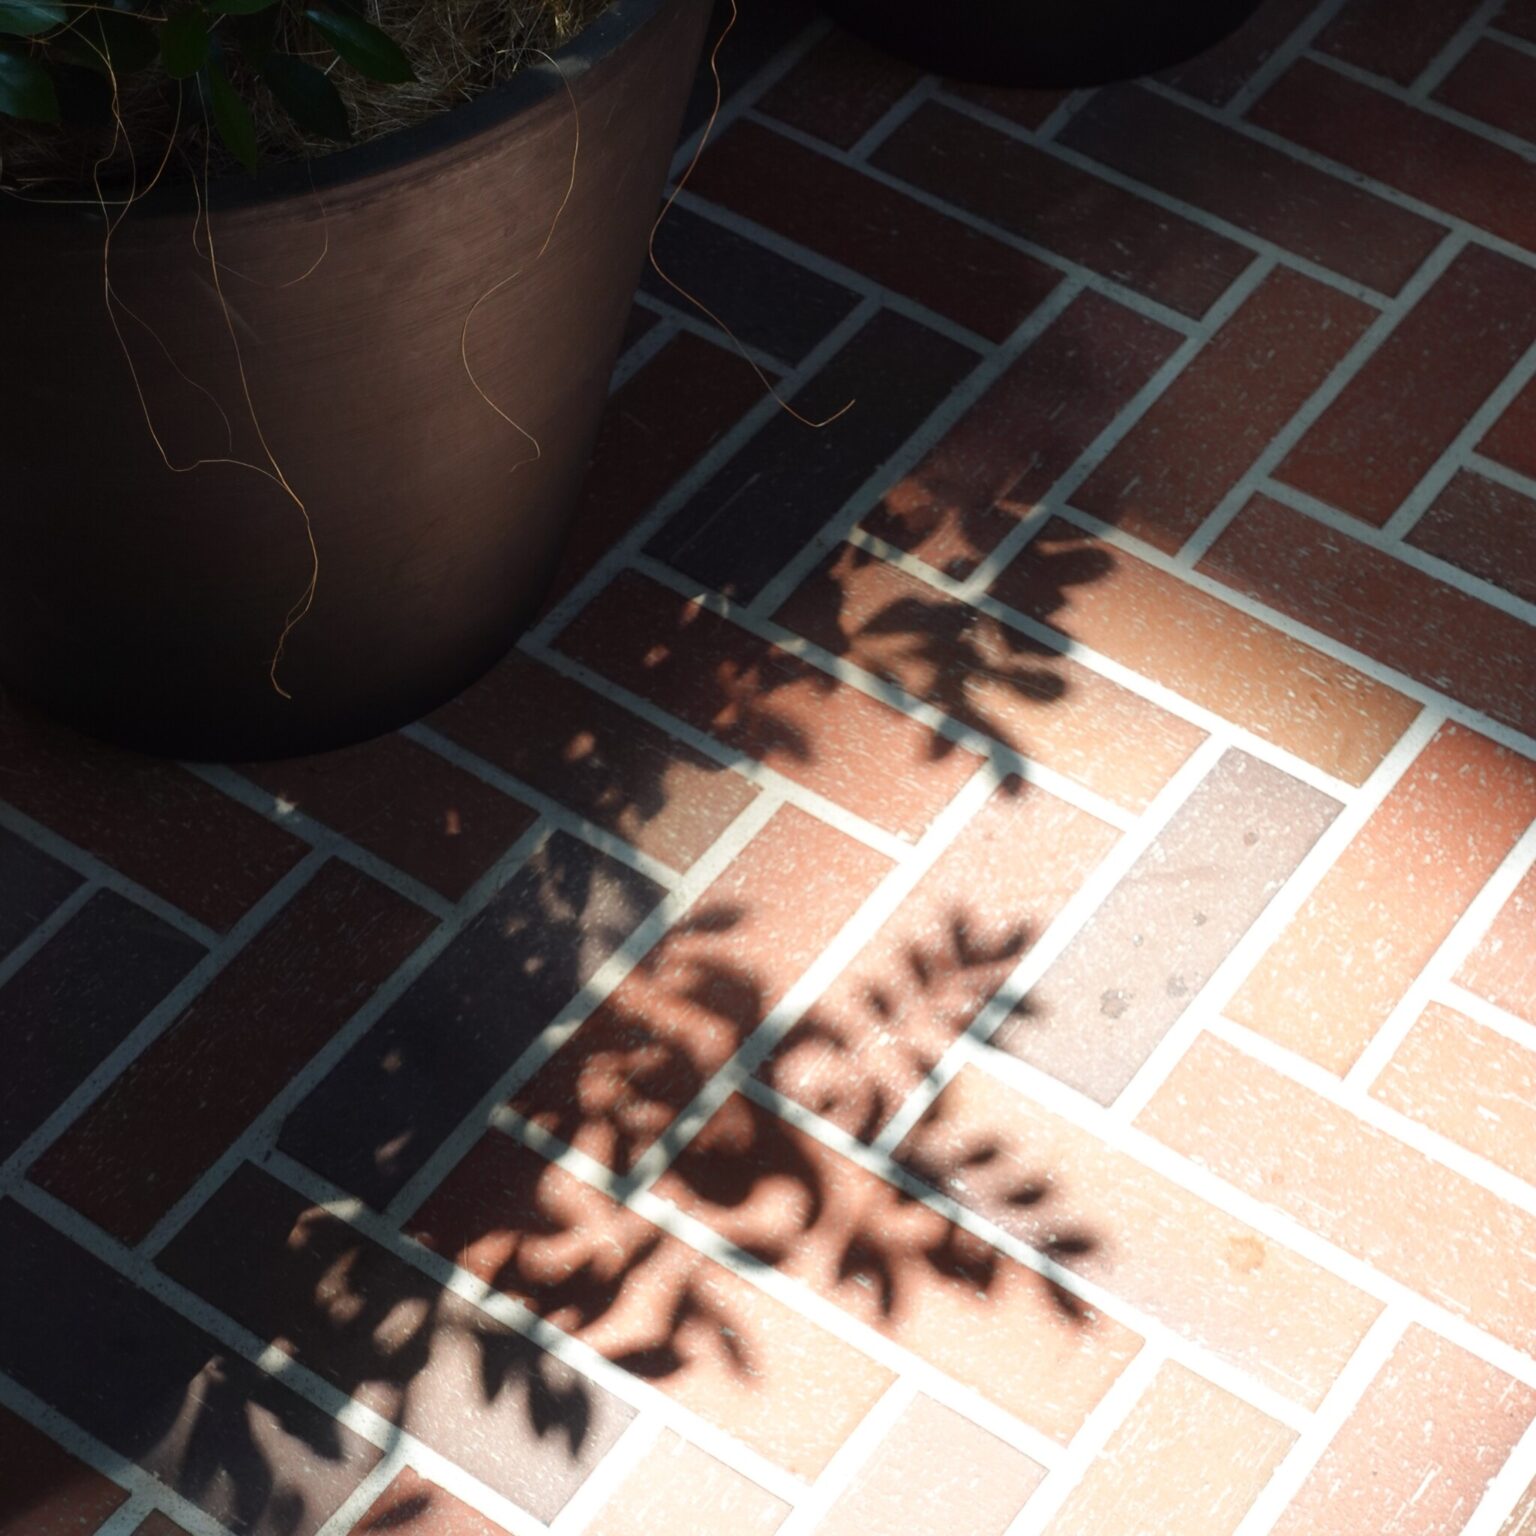 煉瓦の床に映る植栽の影。この煉瓦は前橋の象徴のひとつ。